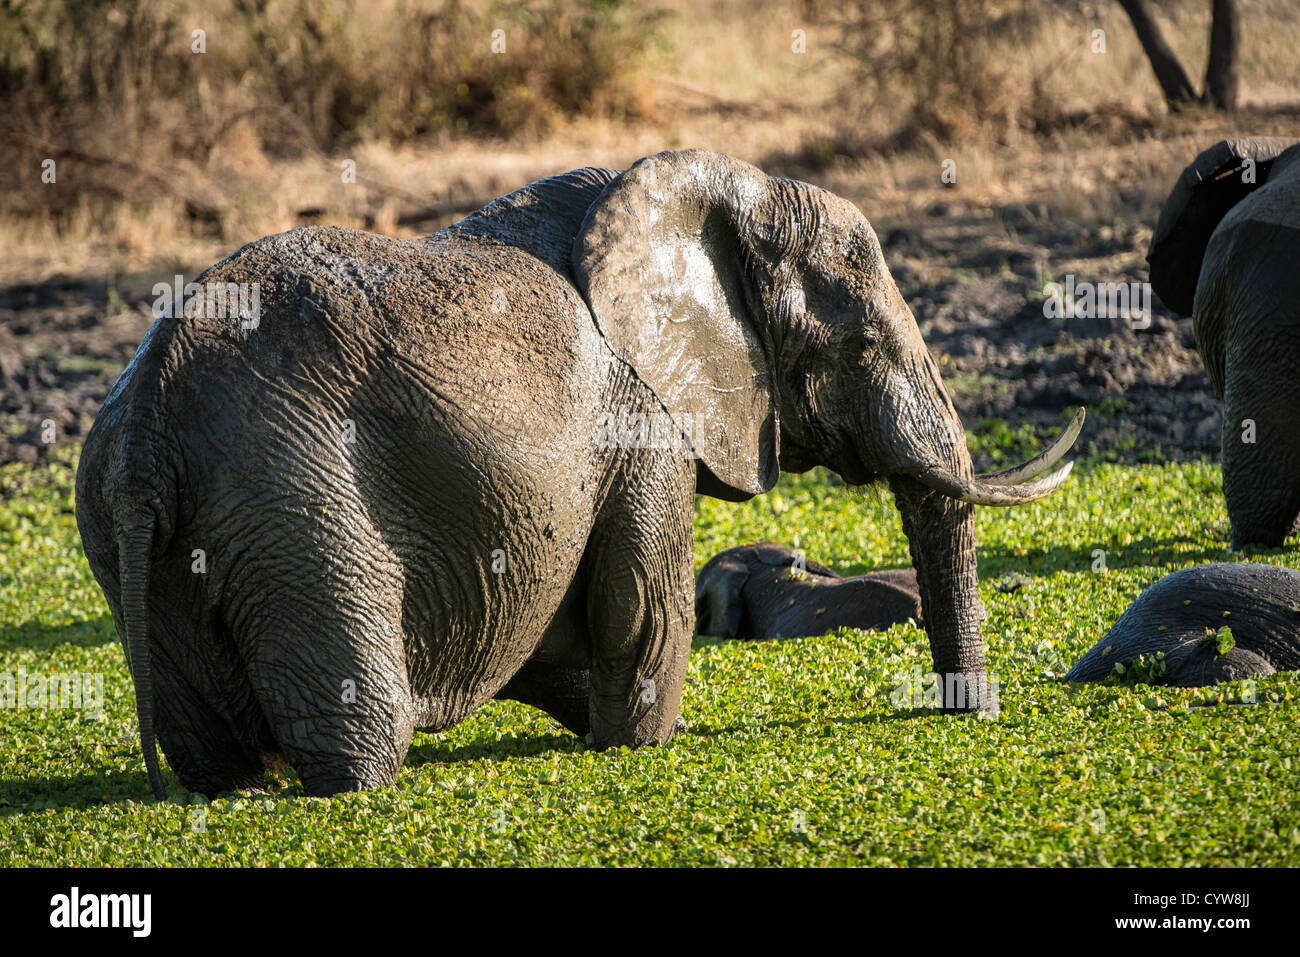 Der Tarangire National Park, Tansania - Elefanten in einem kleinen Reed - See in der Tarangire National Park im Norden von Tansania, nicht weit von den Ngorongoro Krater und die Serengeti. Stockfoto